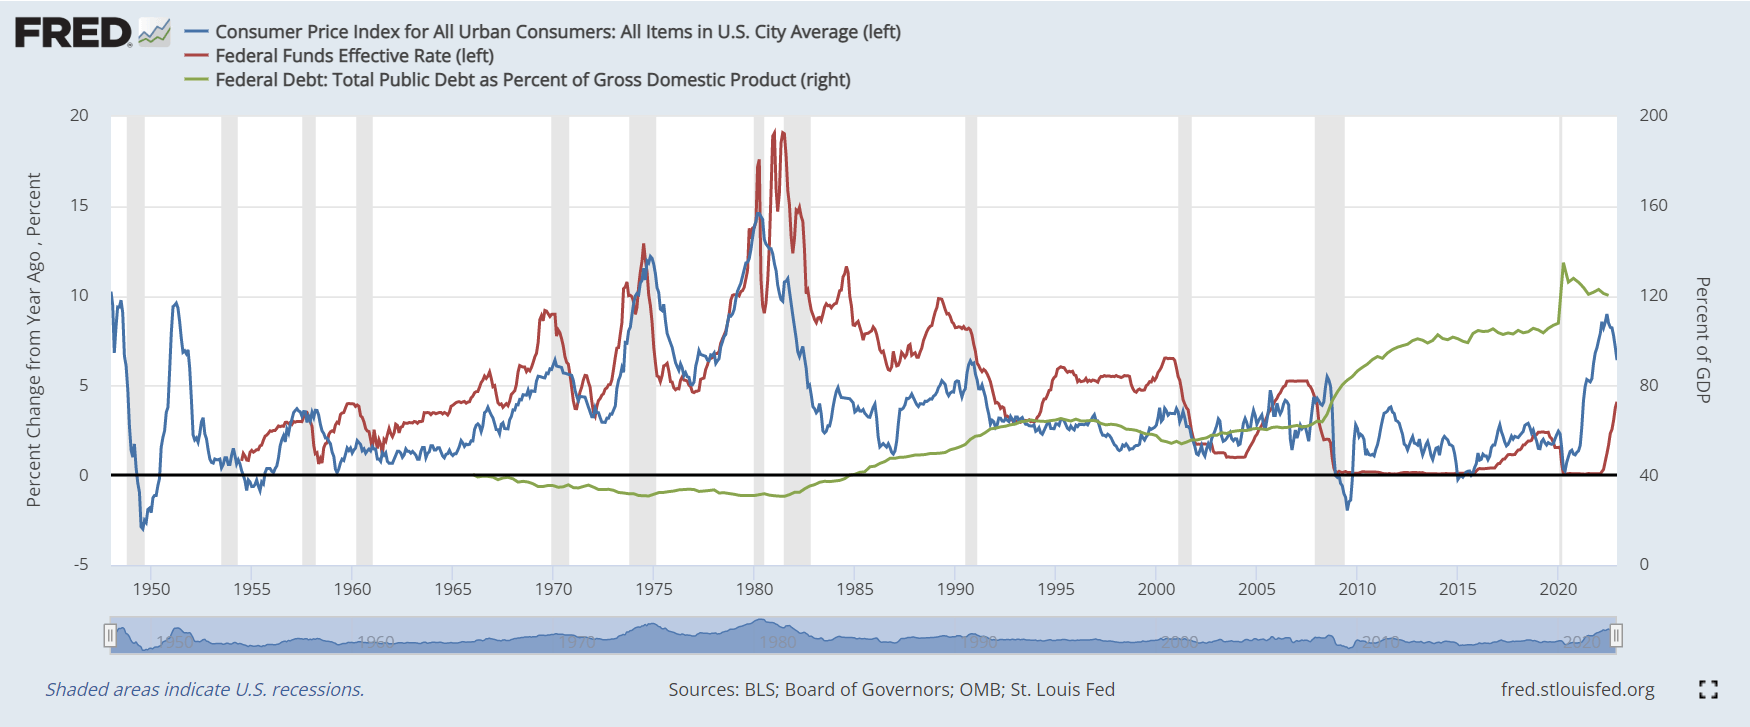 الرقم القياسي لأسعار المستهلك والأموال الفيدرالية والدين إلى الناتج المحلي الإجمالي